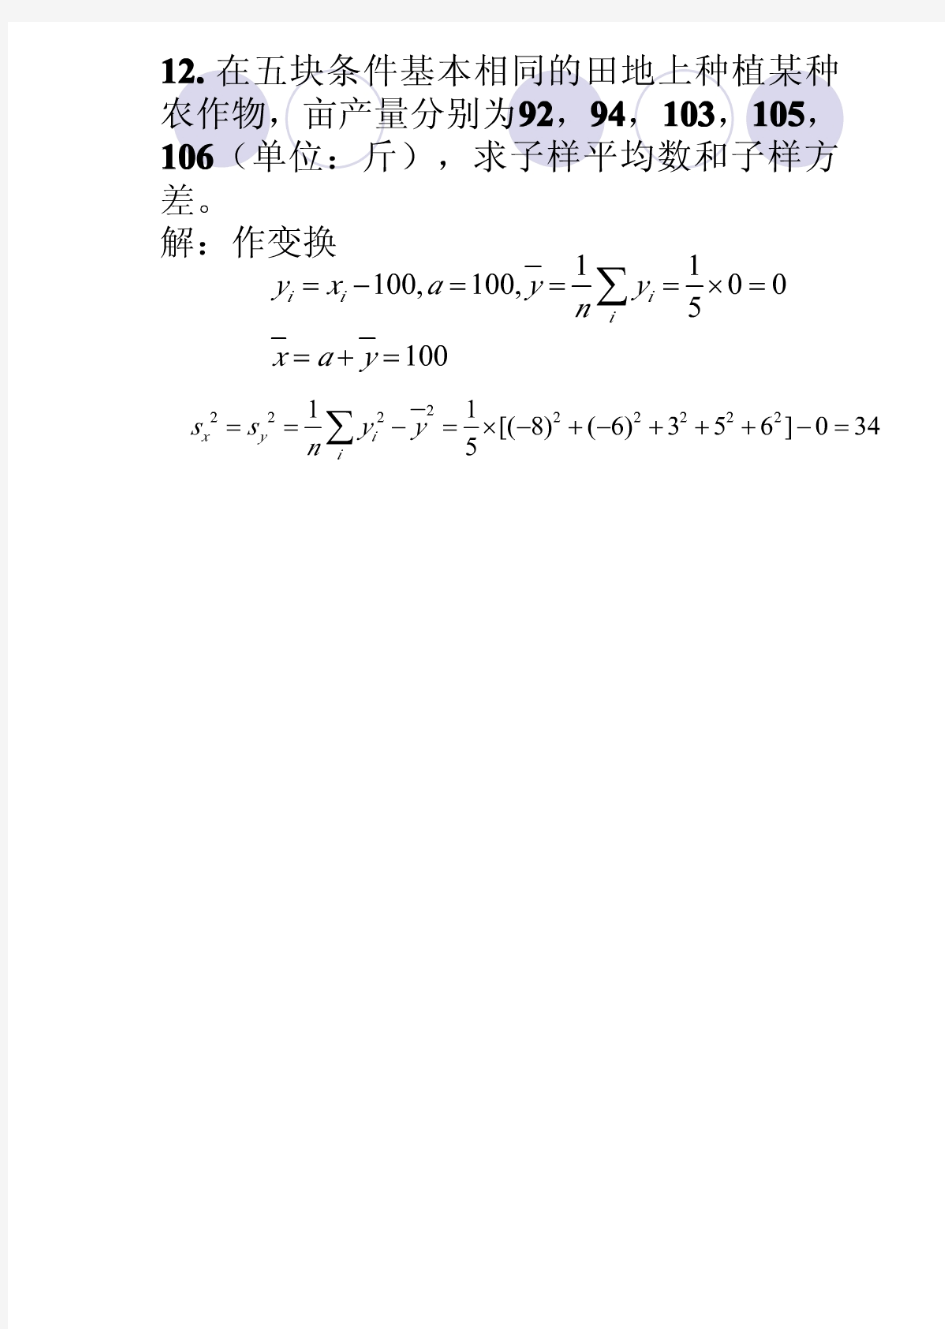 数理统计答案(汪荣鑫)-含书签